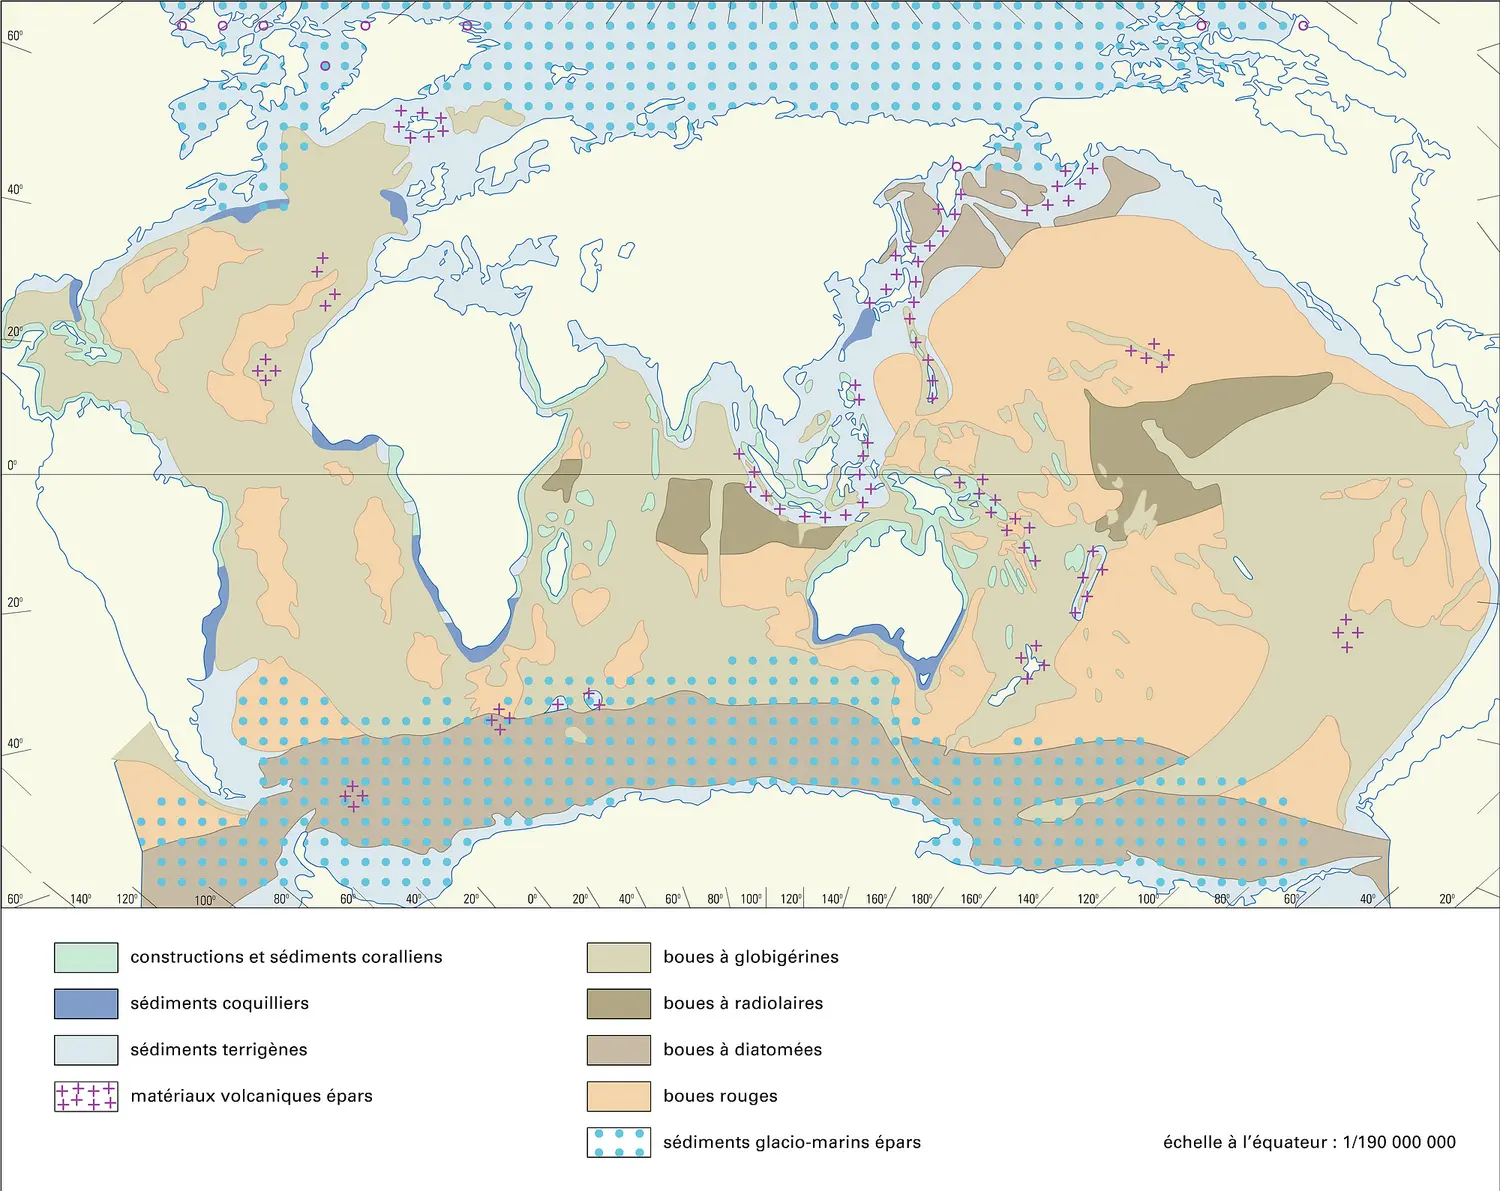 Sédiments marins : répartition